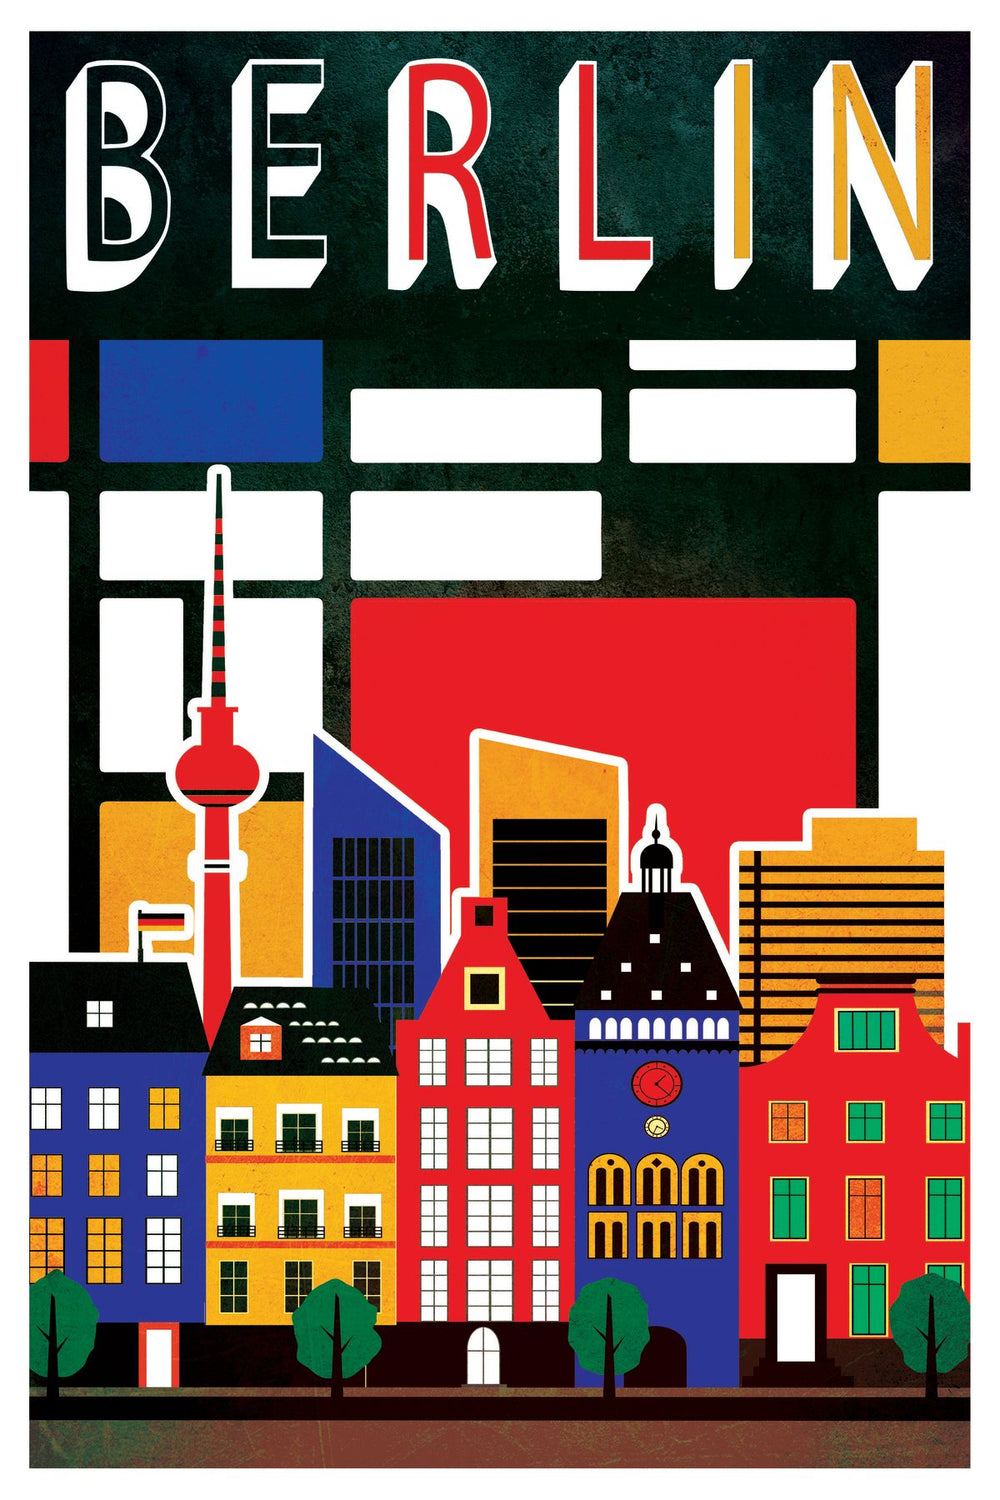 Berlin Tourism Vintage Poster